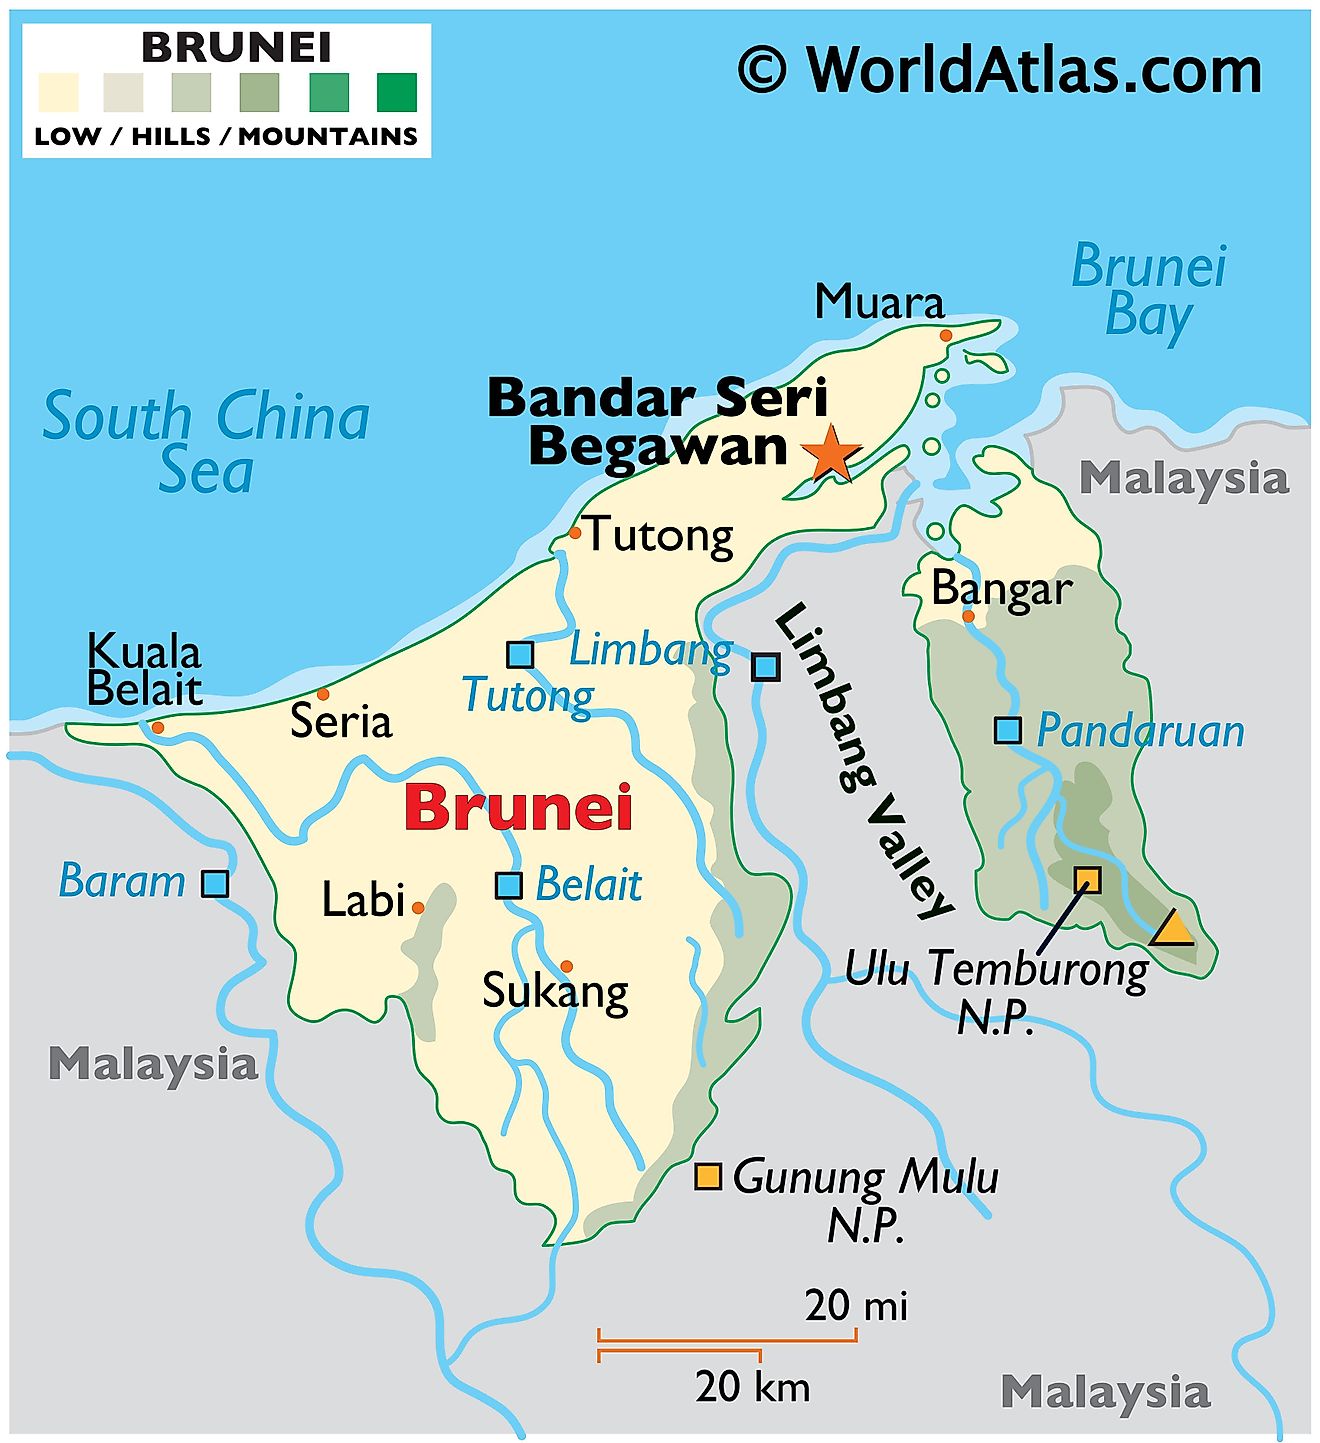 Brunei Darussalam Maps & Facts - World Atlas